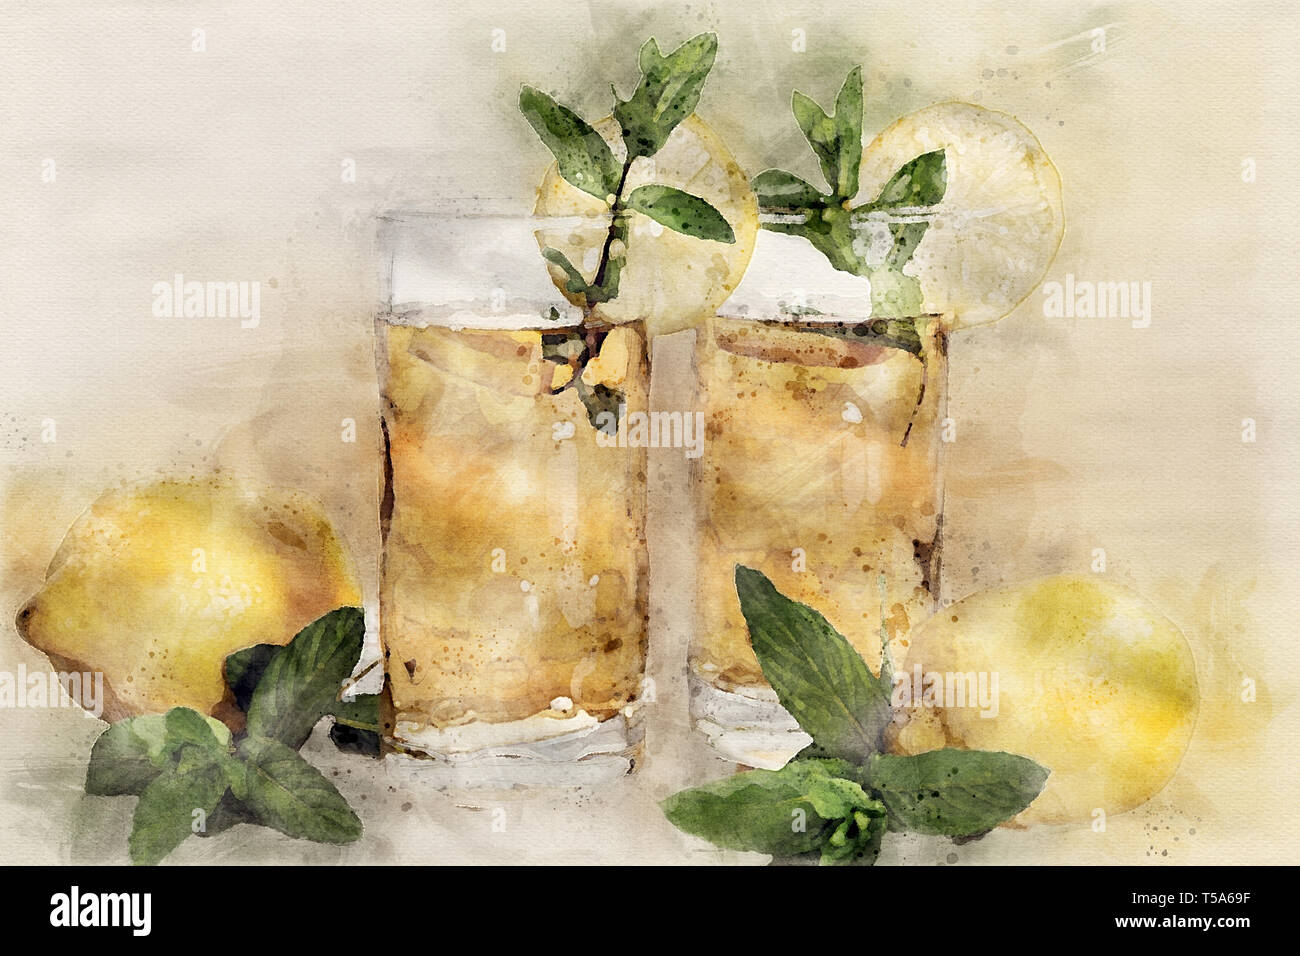 tè al limone con menta due bicchieri Stock Photo